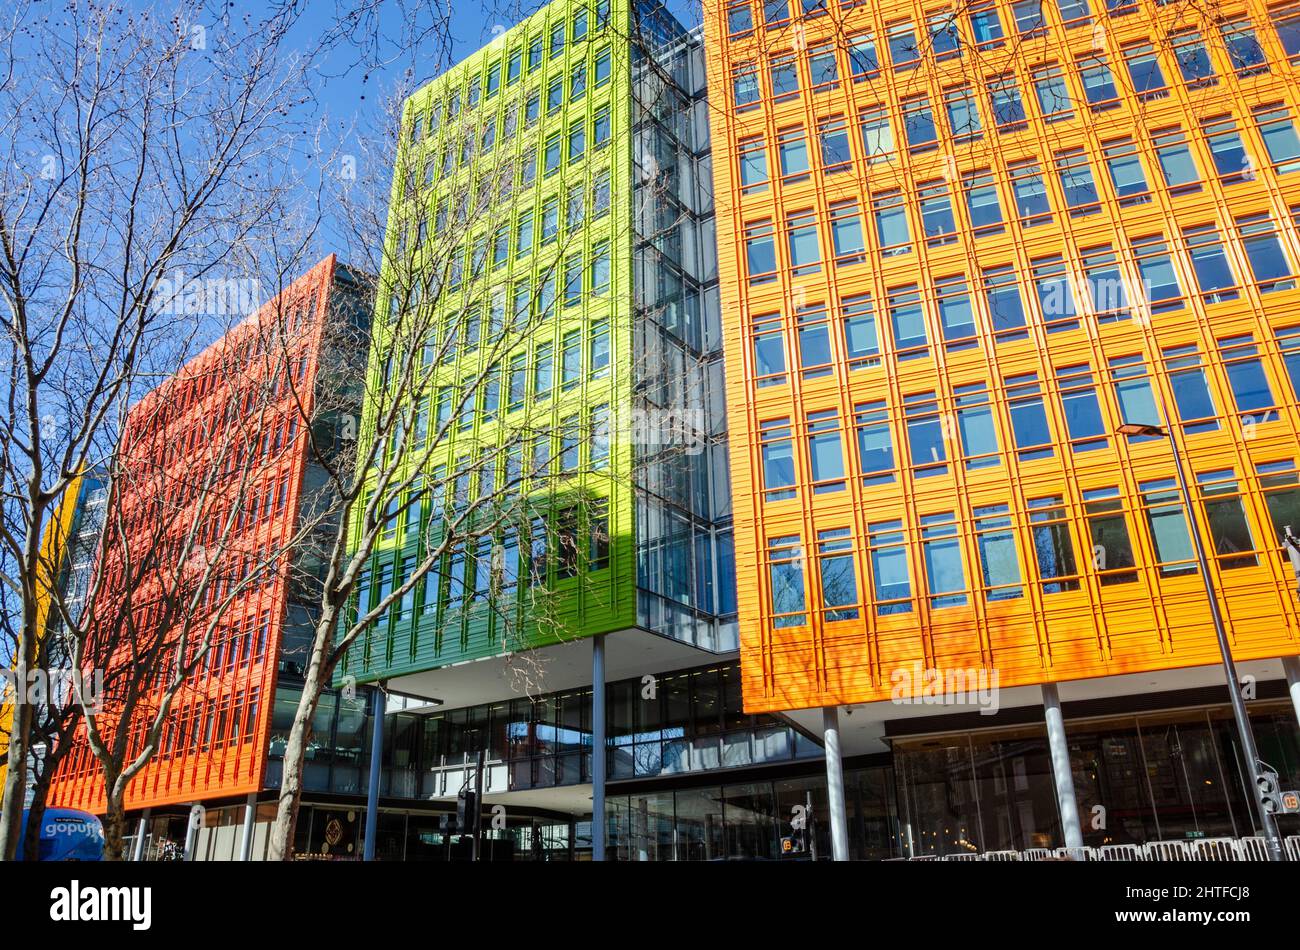 Modernes, farbenfrohes, zeitgenössisches Design und Architektur, die in Bürogebäuden im Central Saint Giles-Viertel in London, Großbritannien, zum Einsatz kommen Stockfoto